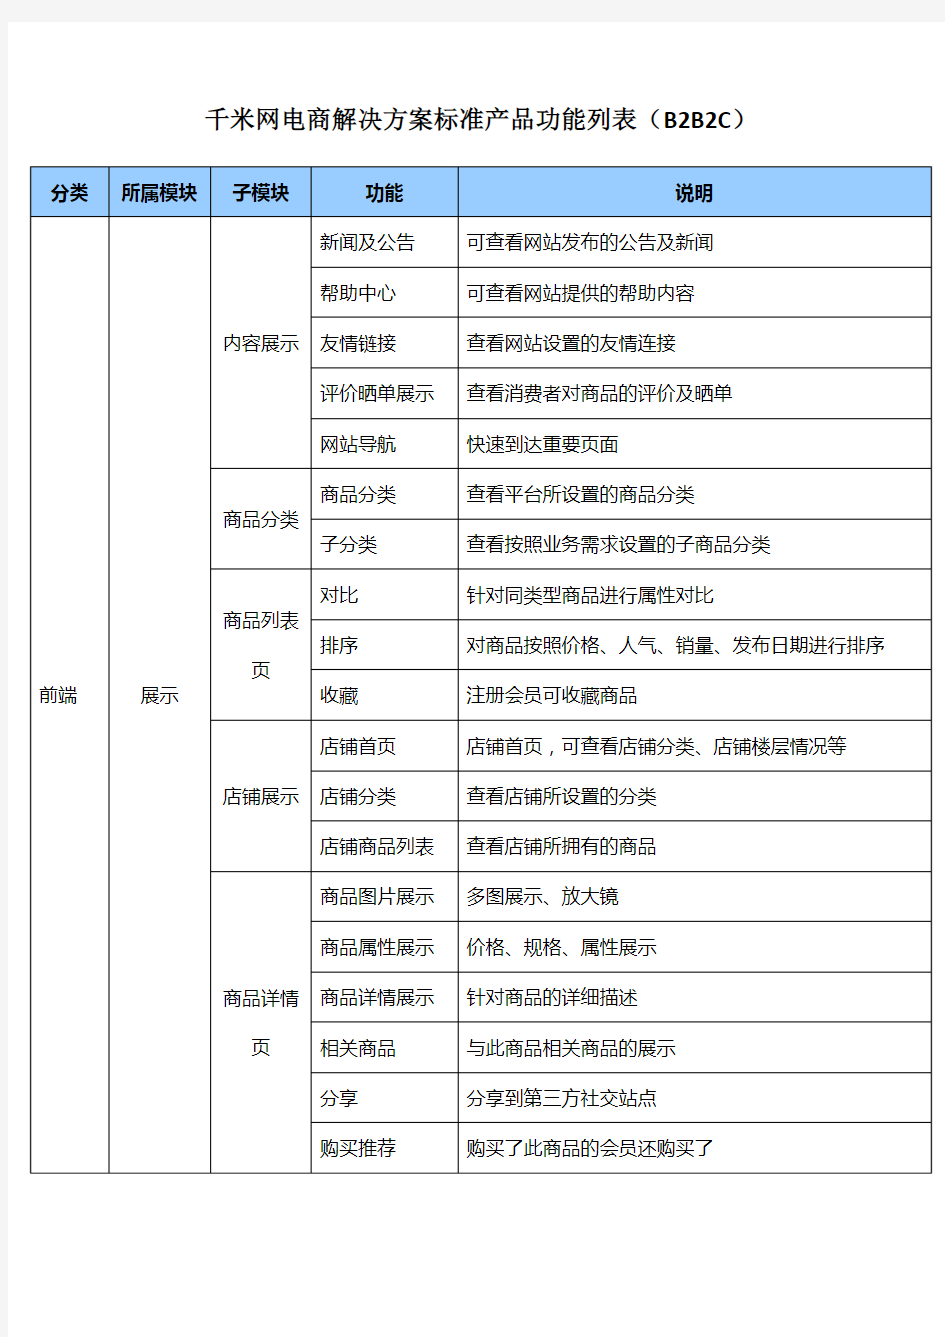 千米网电商解决方案标准产品功能列表(BBC)2.12.22